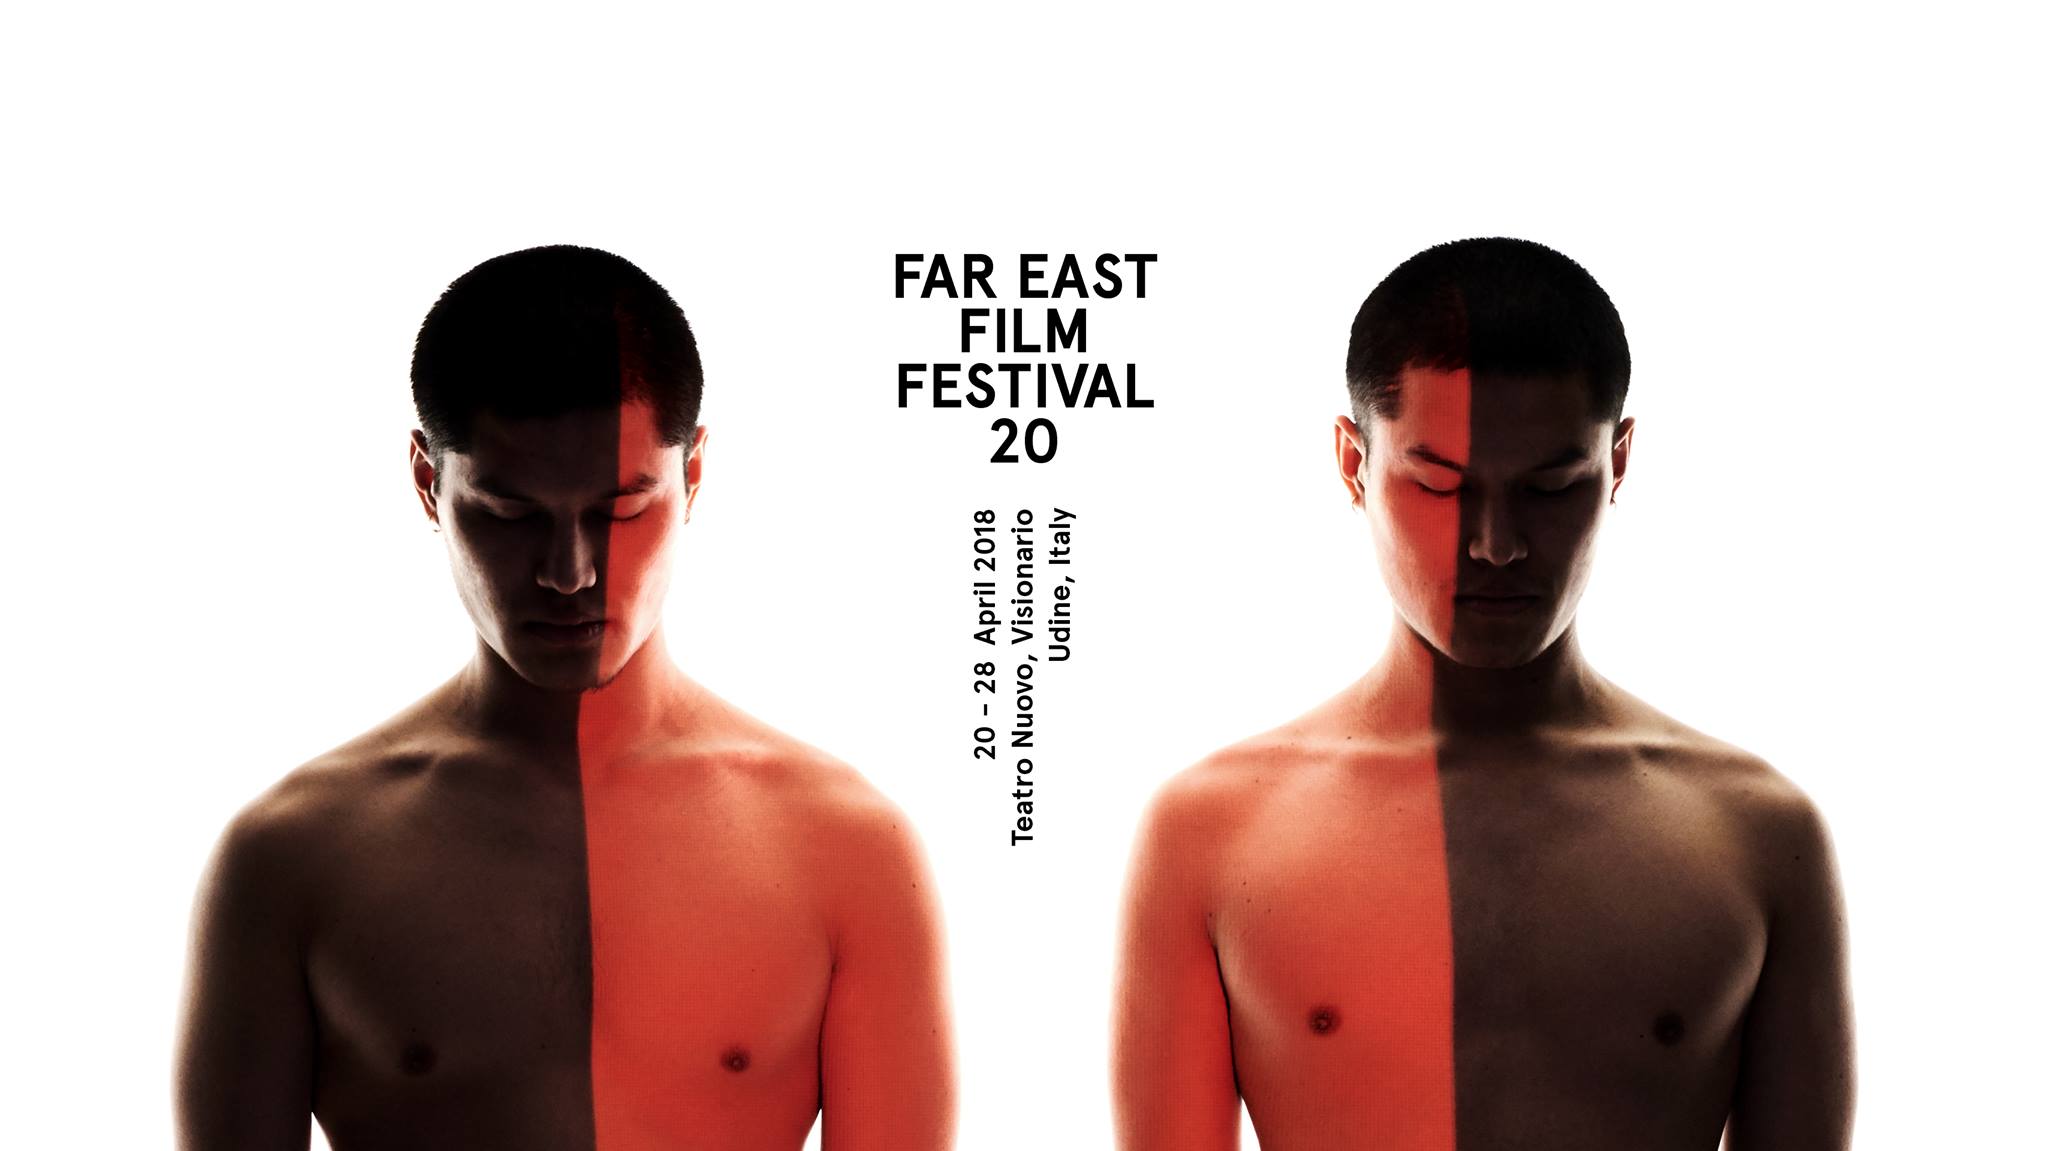 FAR EAST FILM FESTIVAL